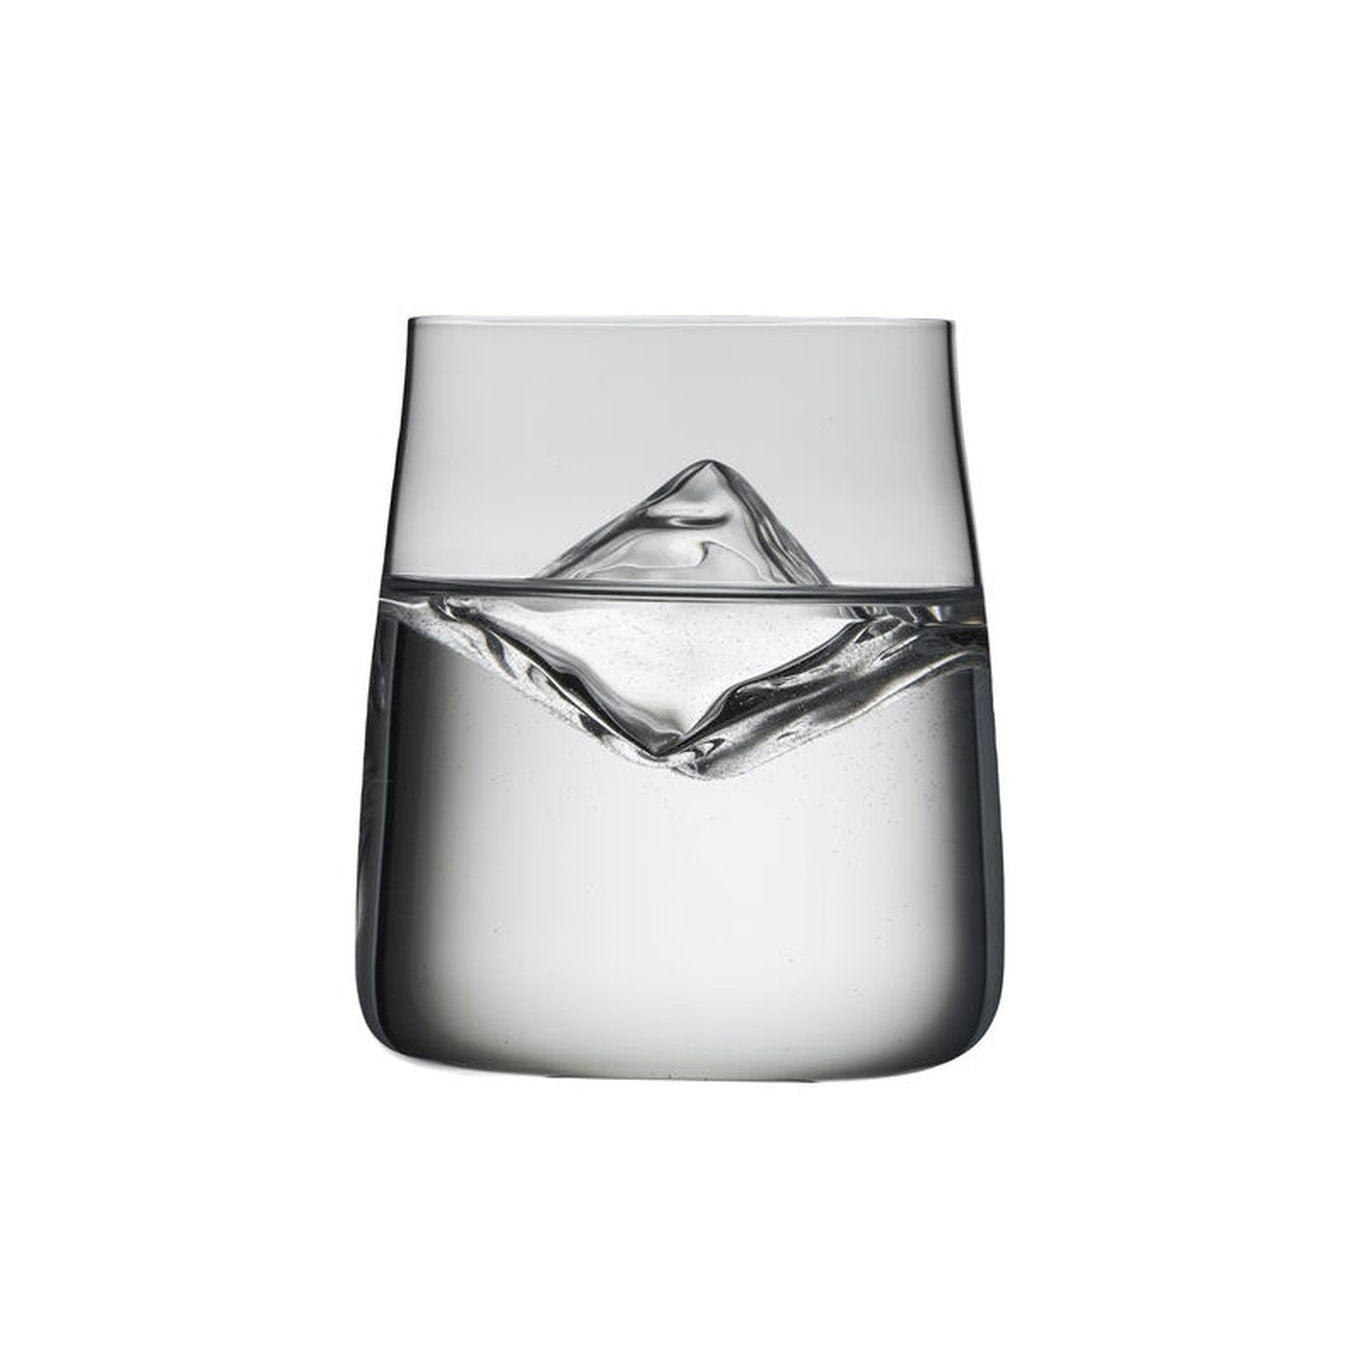 Lyngby Glas Zero Krystal Vandglas 42 Cl, 6 Stk.